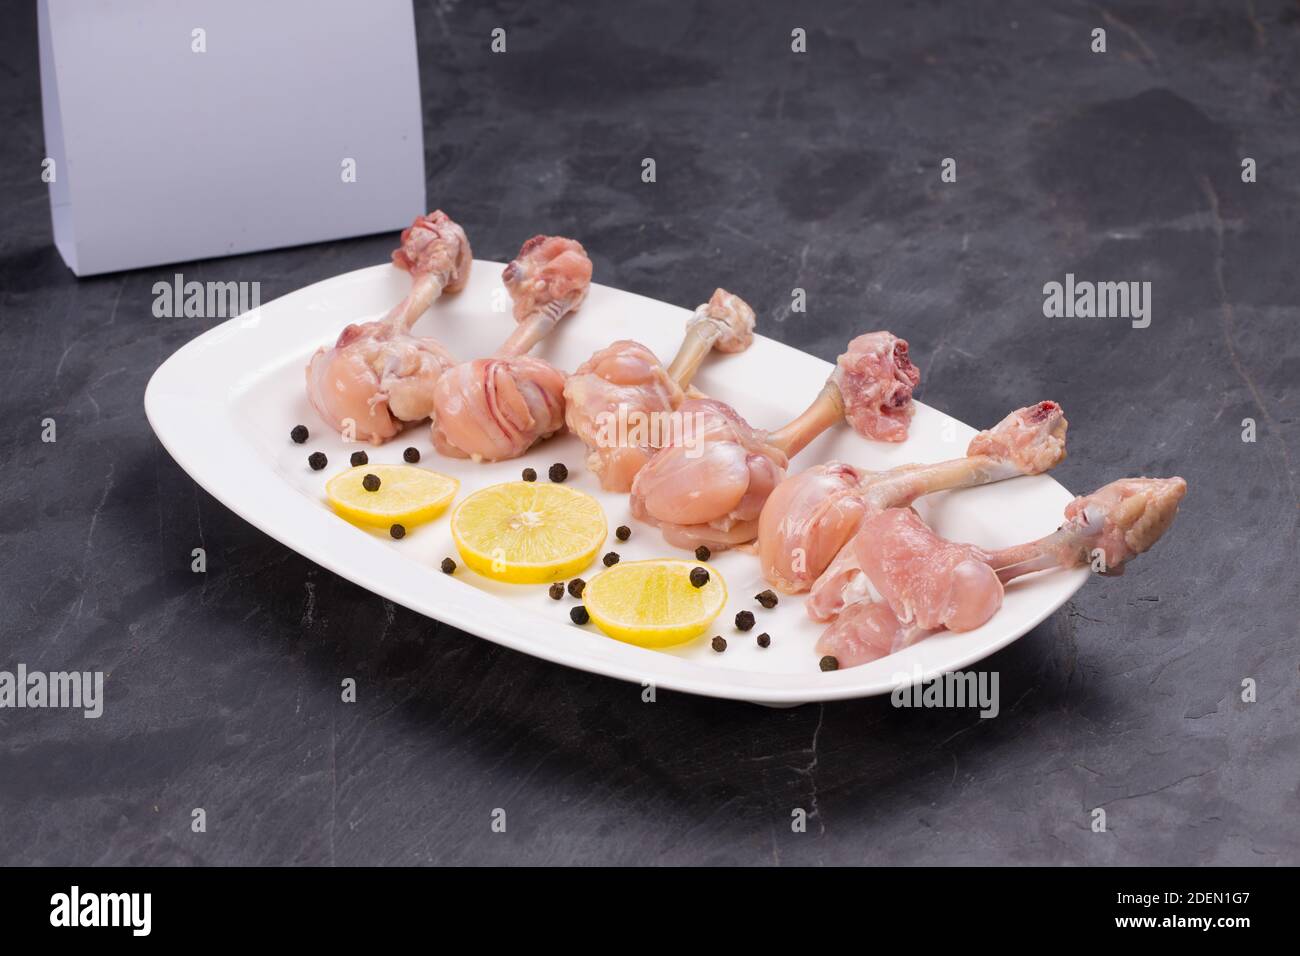 Rohes Huhn Lollipop, sechs Stücke Huhn Lollipop auf einem angeordnet Servierteller weiß und mit Zitronenscheiben und schwarz garniert Mit Lieferung pfeffern Stockfoto